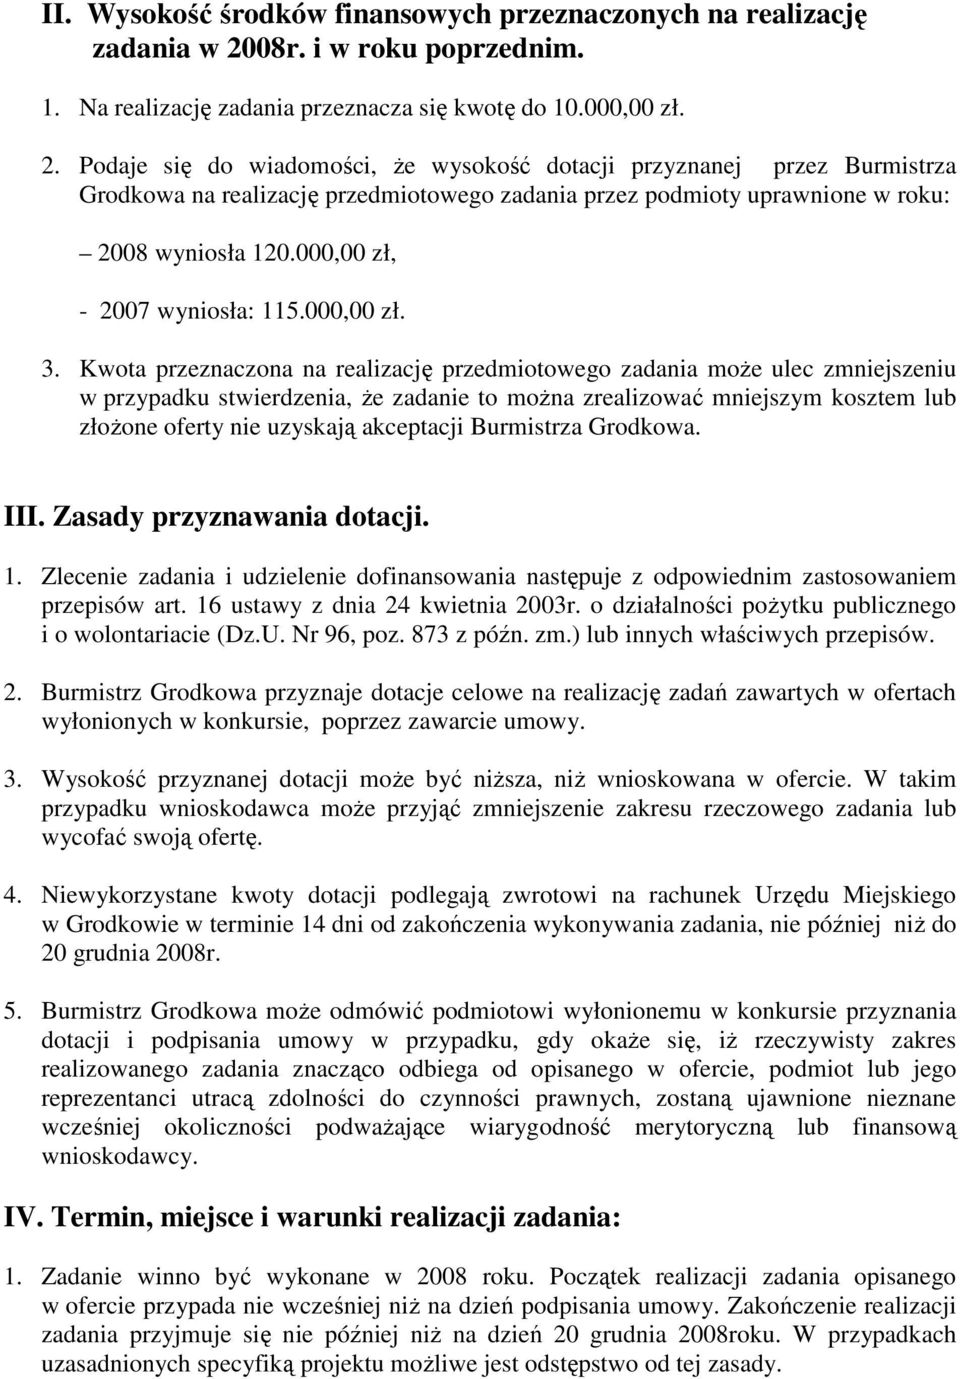 Podaje się do wiadomości, Ŝe wysokość dotacji przyznanej przez Burmistrza Grodkowa na realizację przedmiotowego zadania przez podmioty uprawnione w roku: 2008 wyniosła 120.